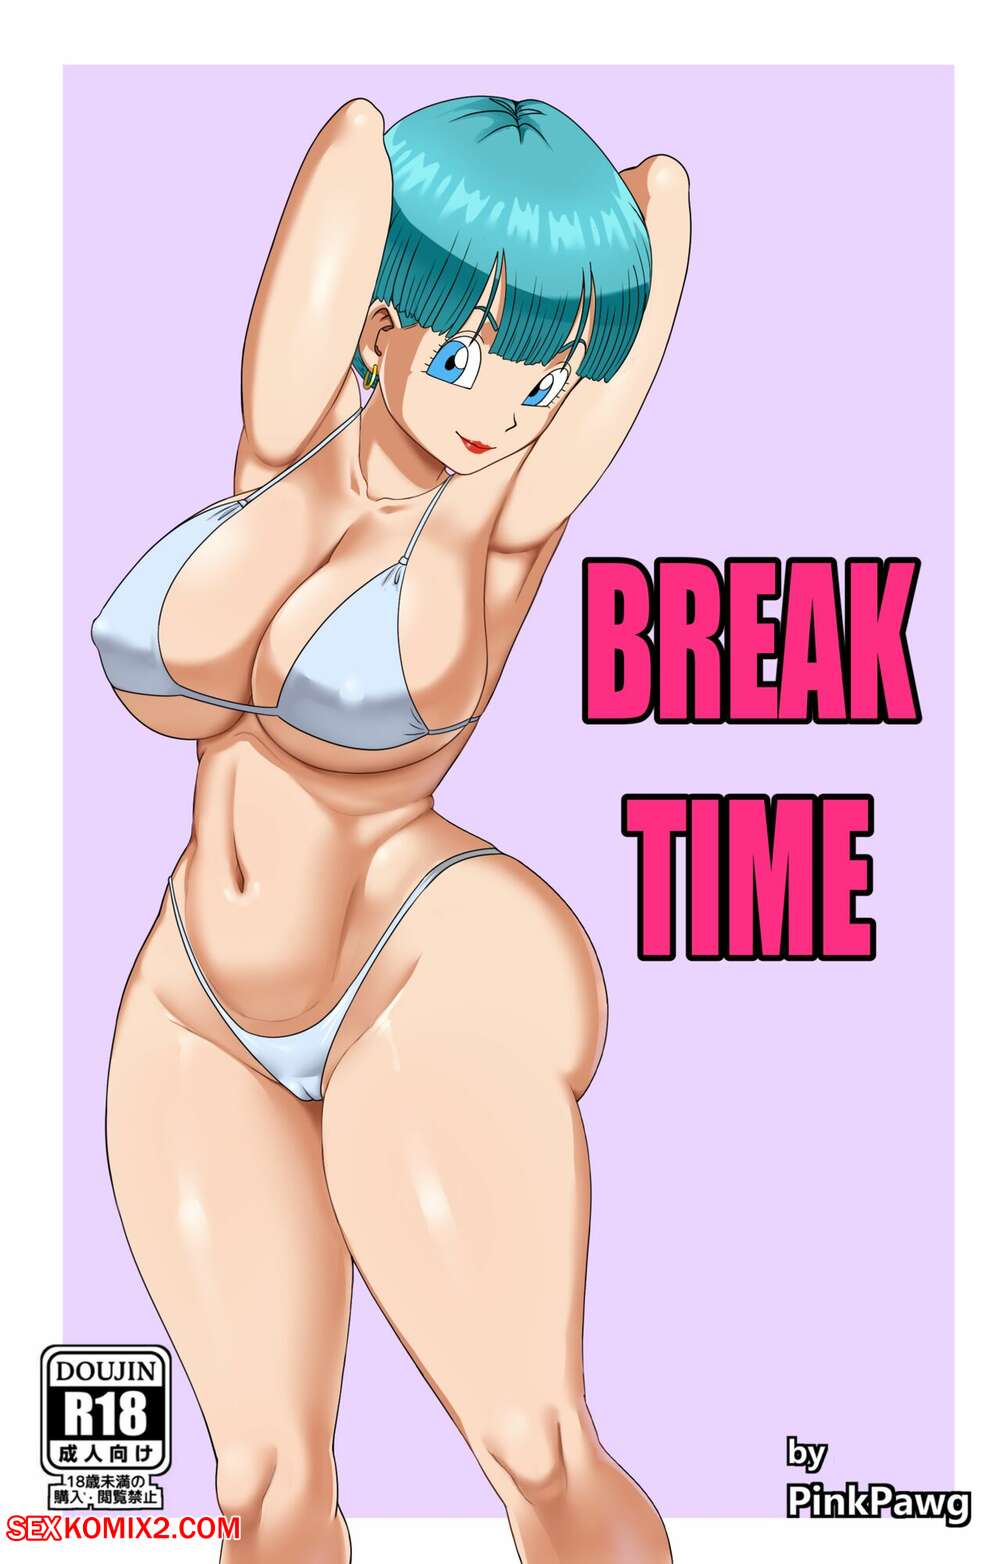 1001px x 1564px - âœ…ï¸ Porn comic Break Time. Dragon Ball Z. Pink Pawg. Sex comic hot sexy babe  | Porn comics in English for adults only | sexkomix2.com